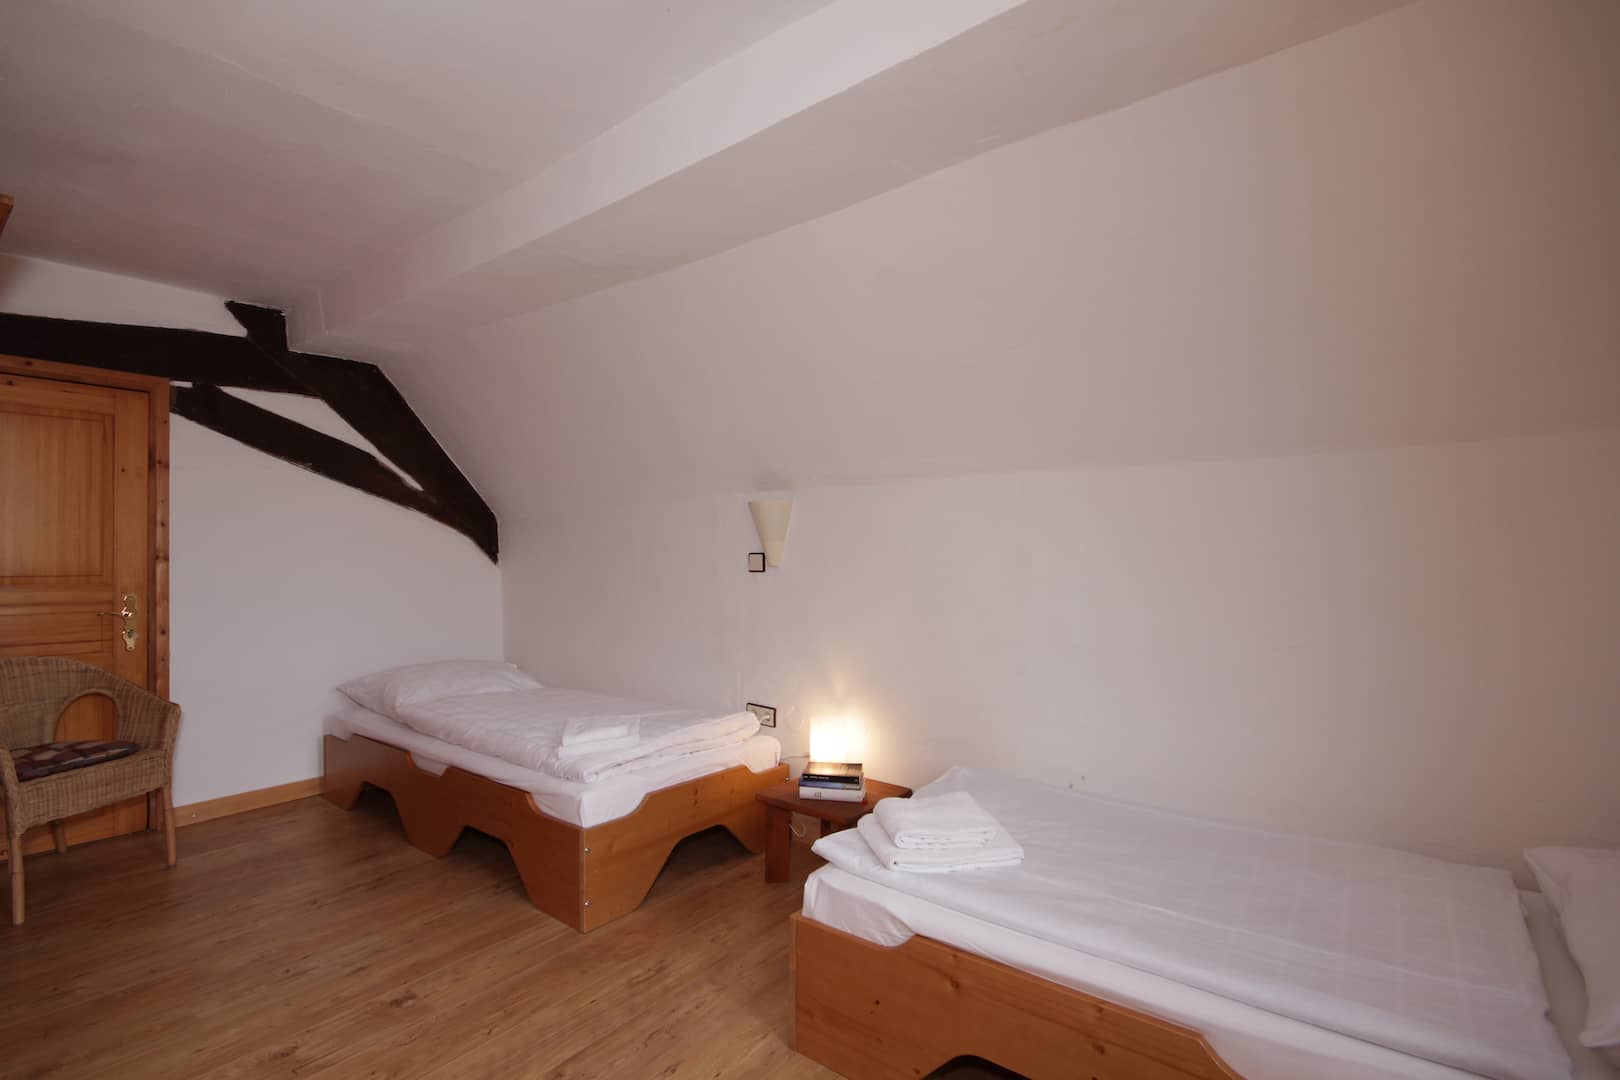 2-Bett Schlafzimmer mit 2 Einzelbetten in Amsel, Ansicht aus Gesellschaftsraum